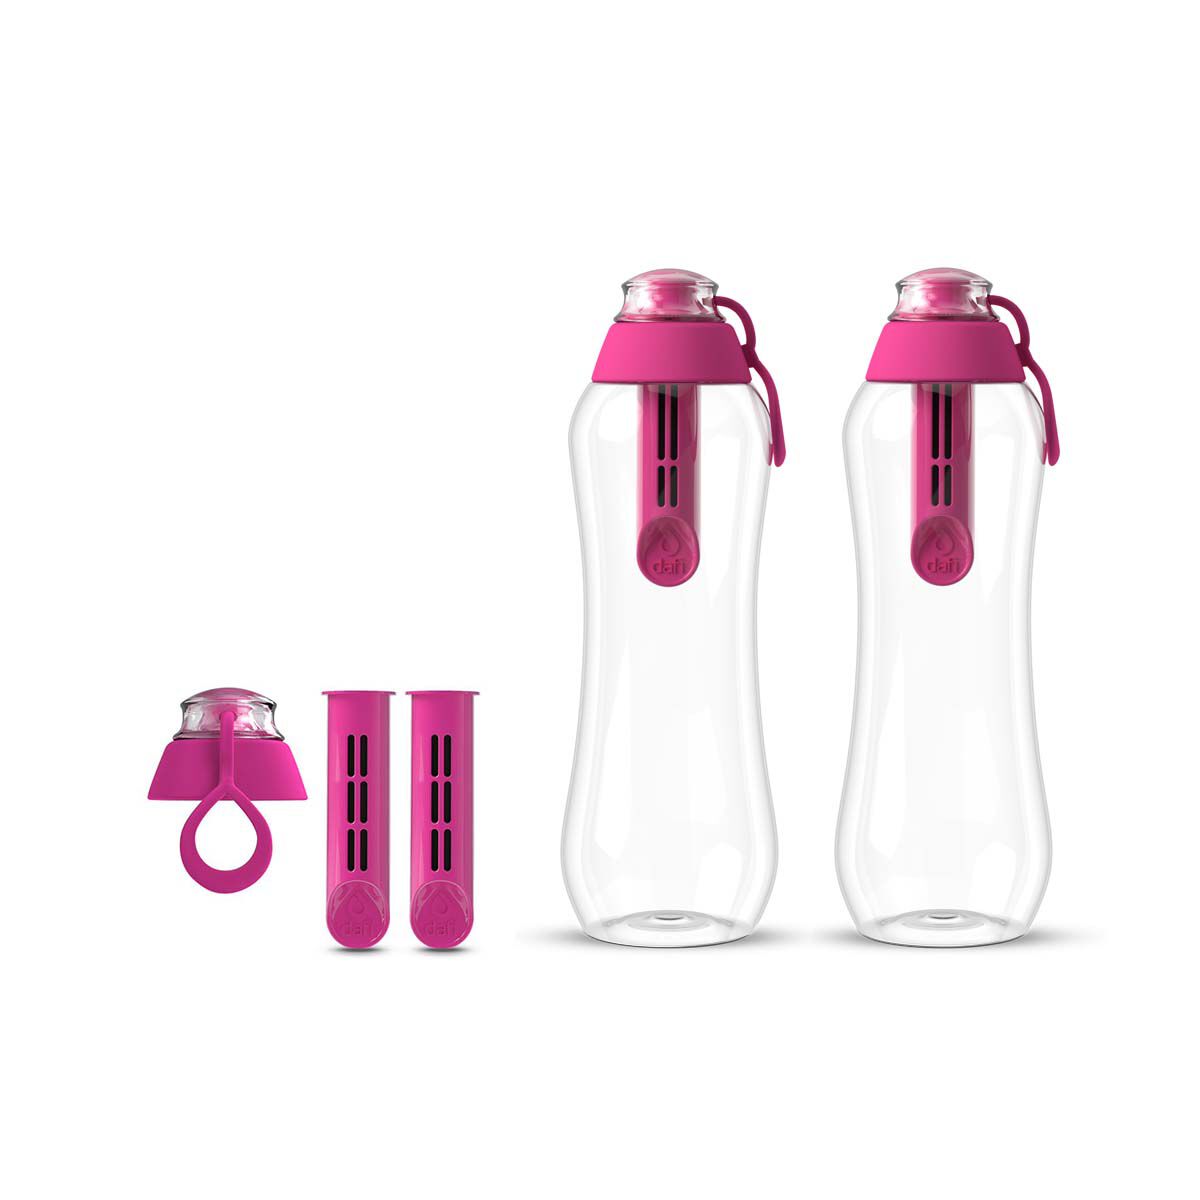 Набор из бутылок с угольным фильтром Dafi Soft, 5 предметов, розовый